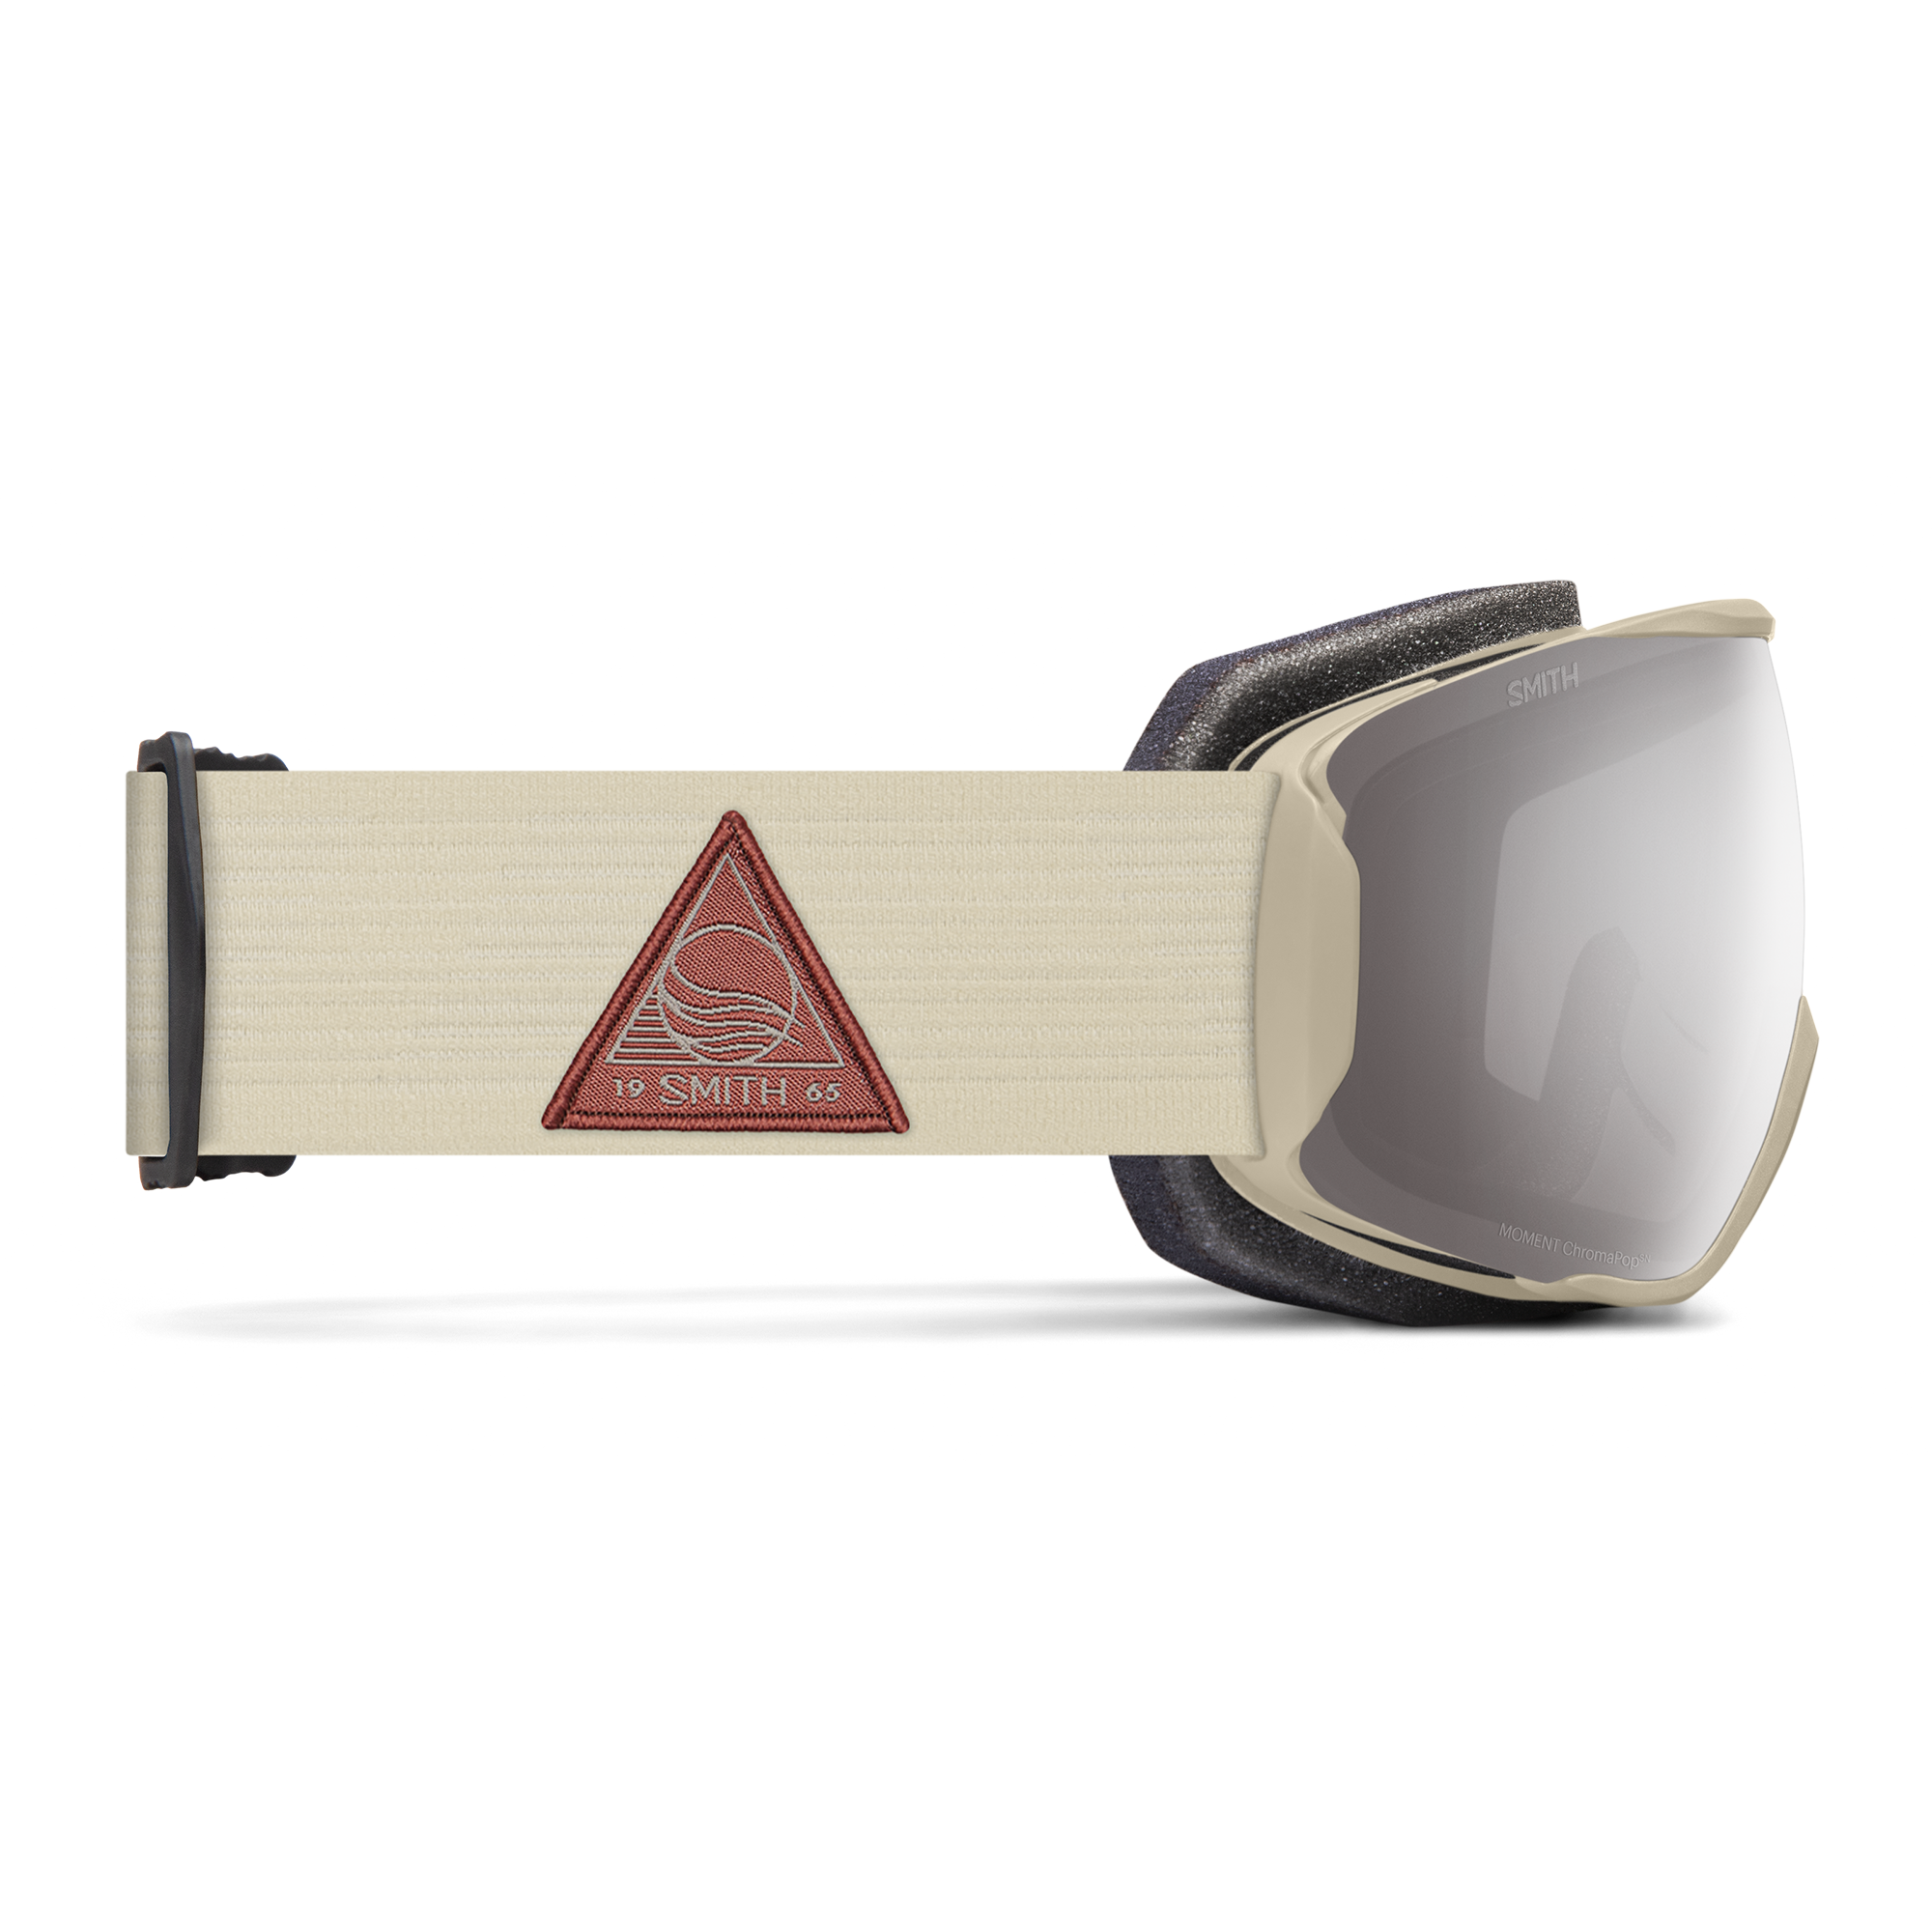 Smith MOMENT - Gafas de esquí mujer white vapor 2021/chromapop